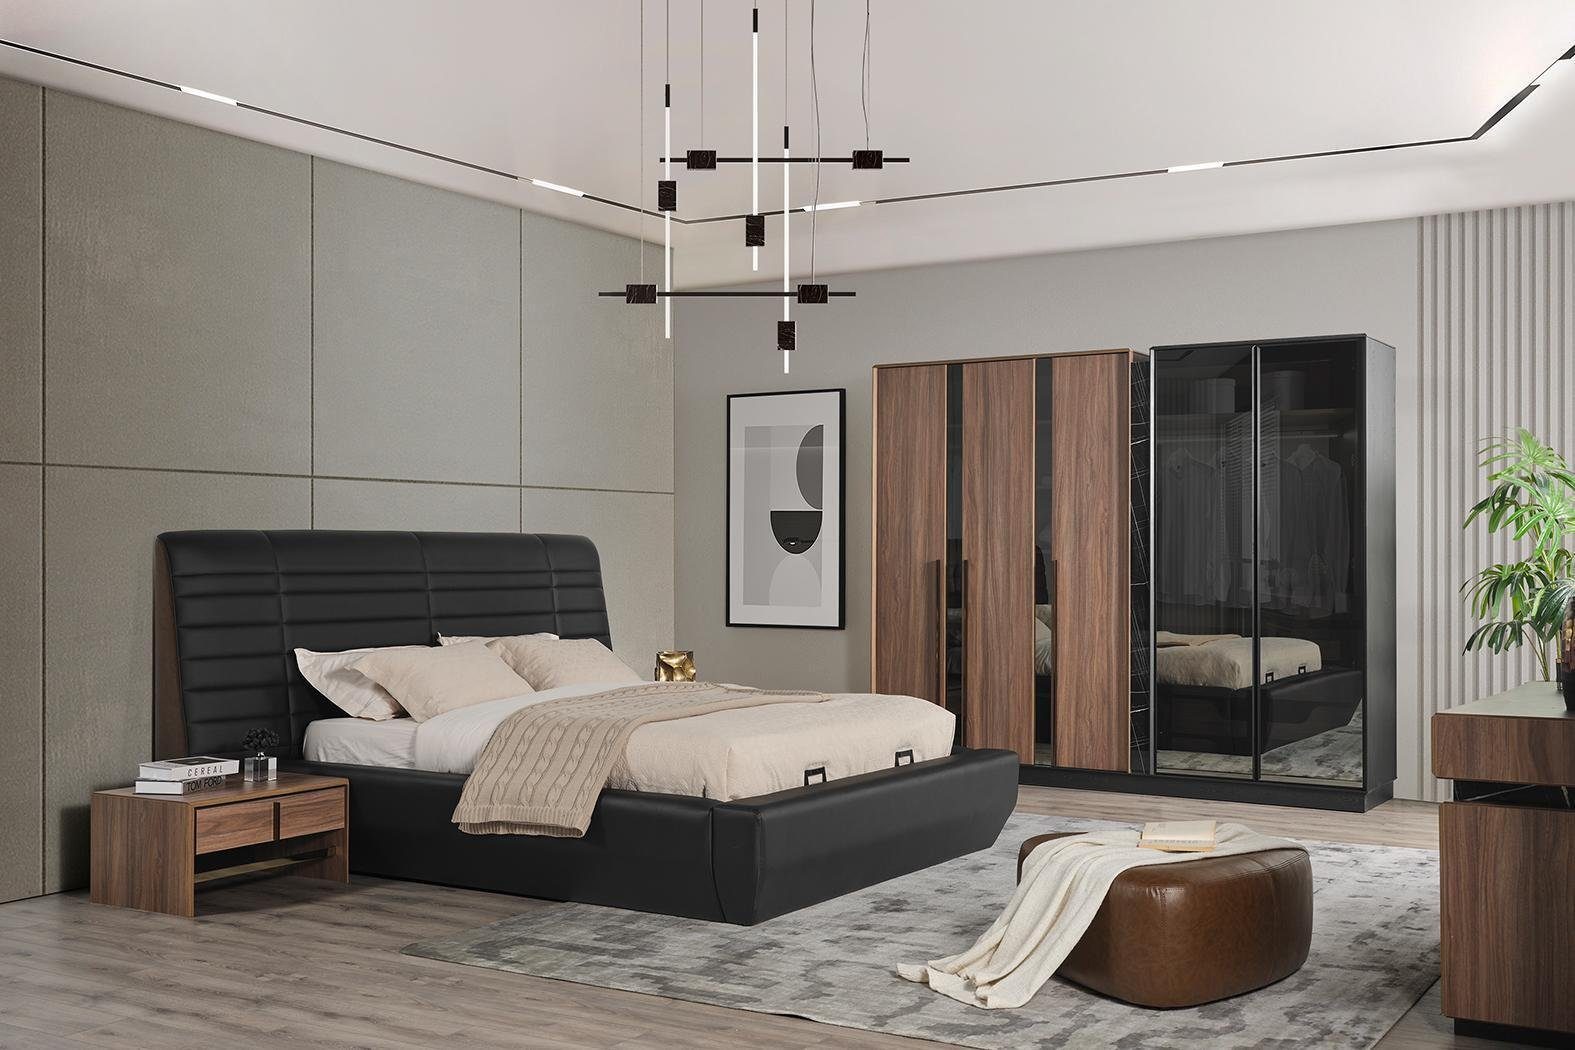 2xNachttische Set In JVmoebel 4tlg Schlafzimmer Luxus, Made Design Schlafzimmer-Set Kleiderschrank Bett Europe